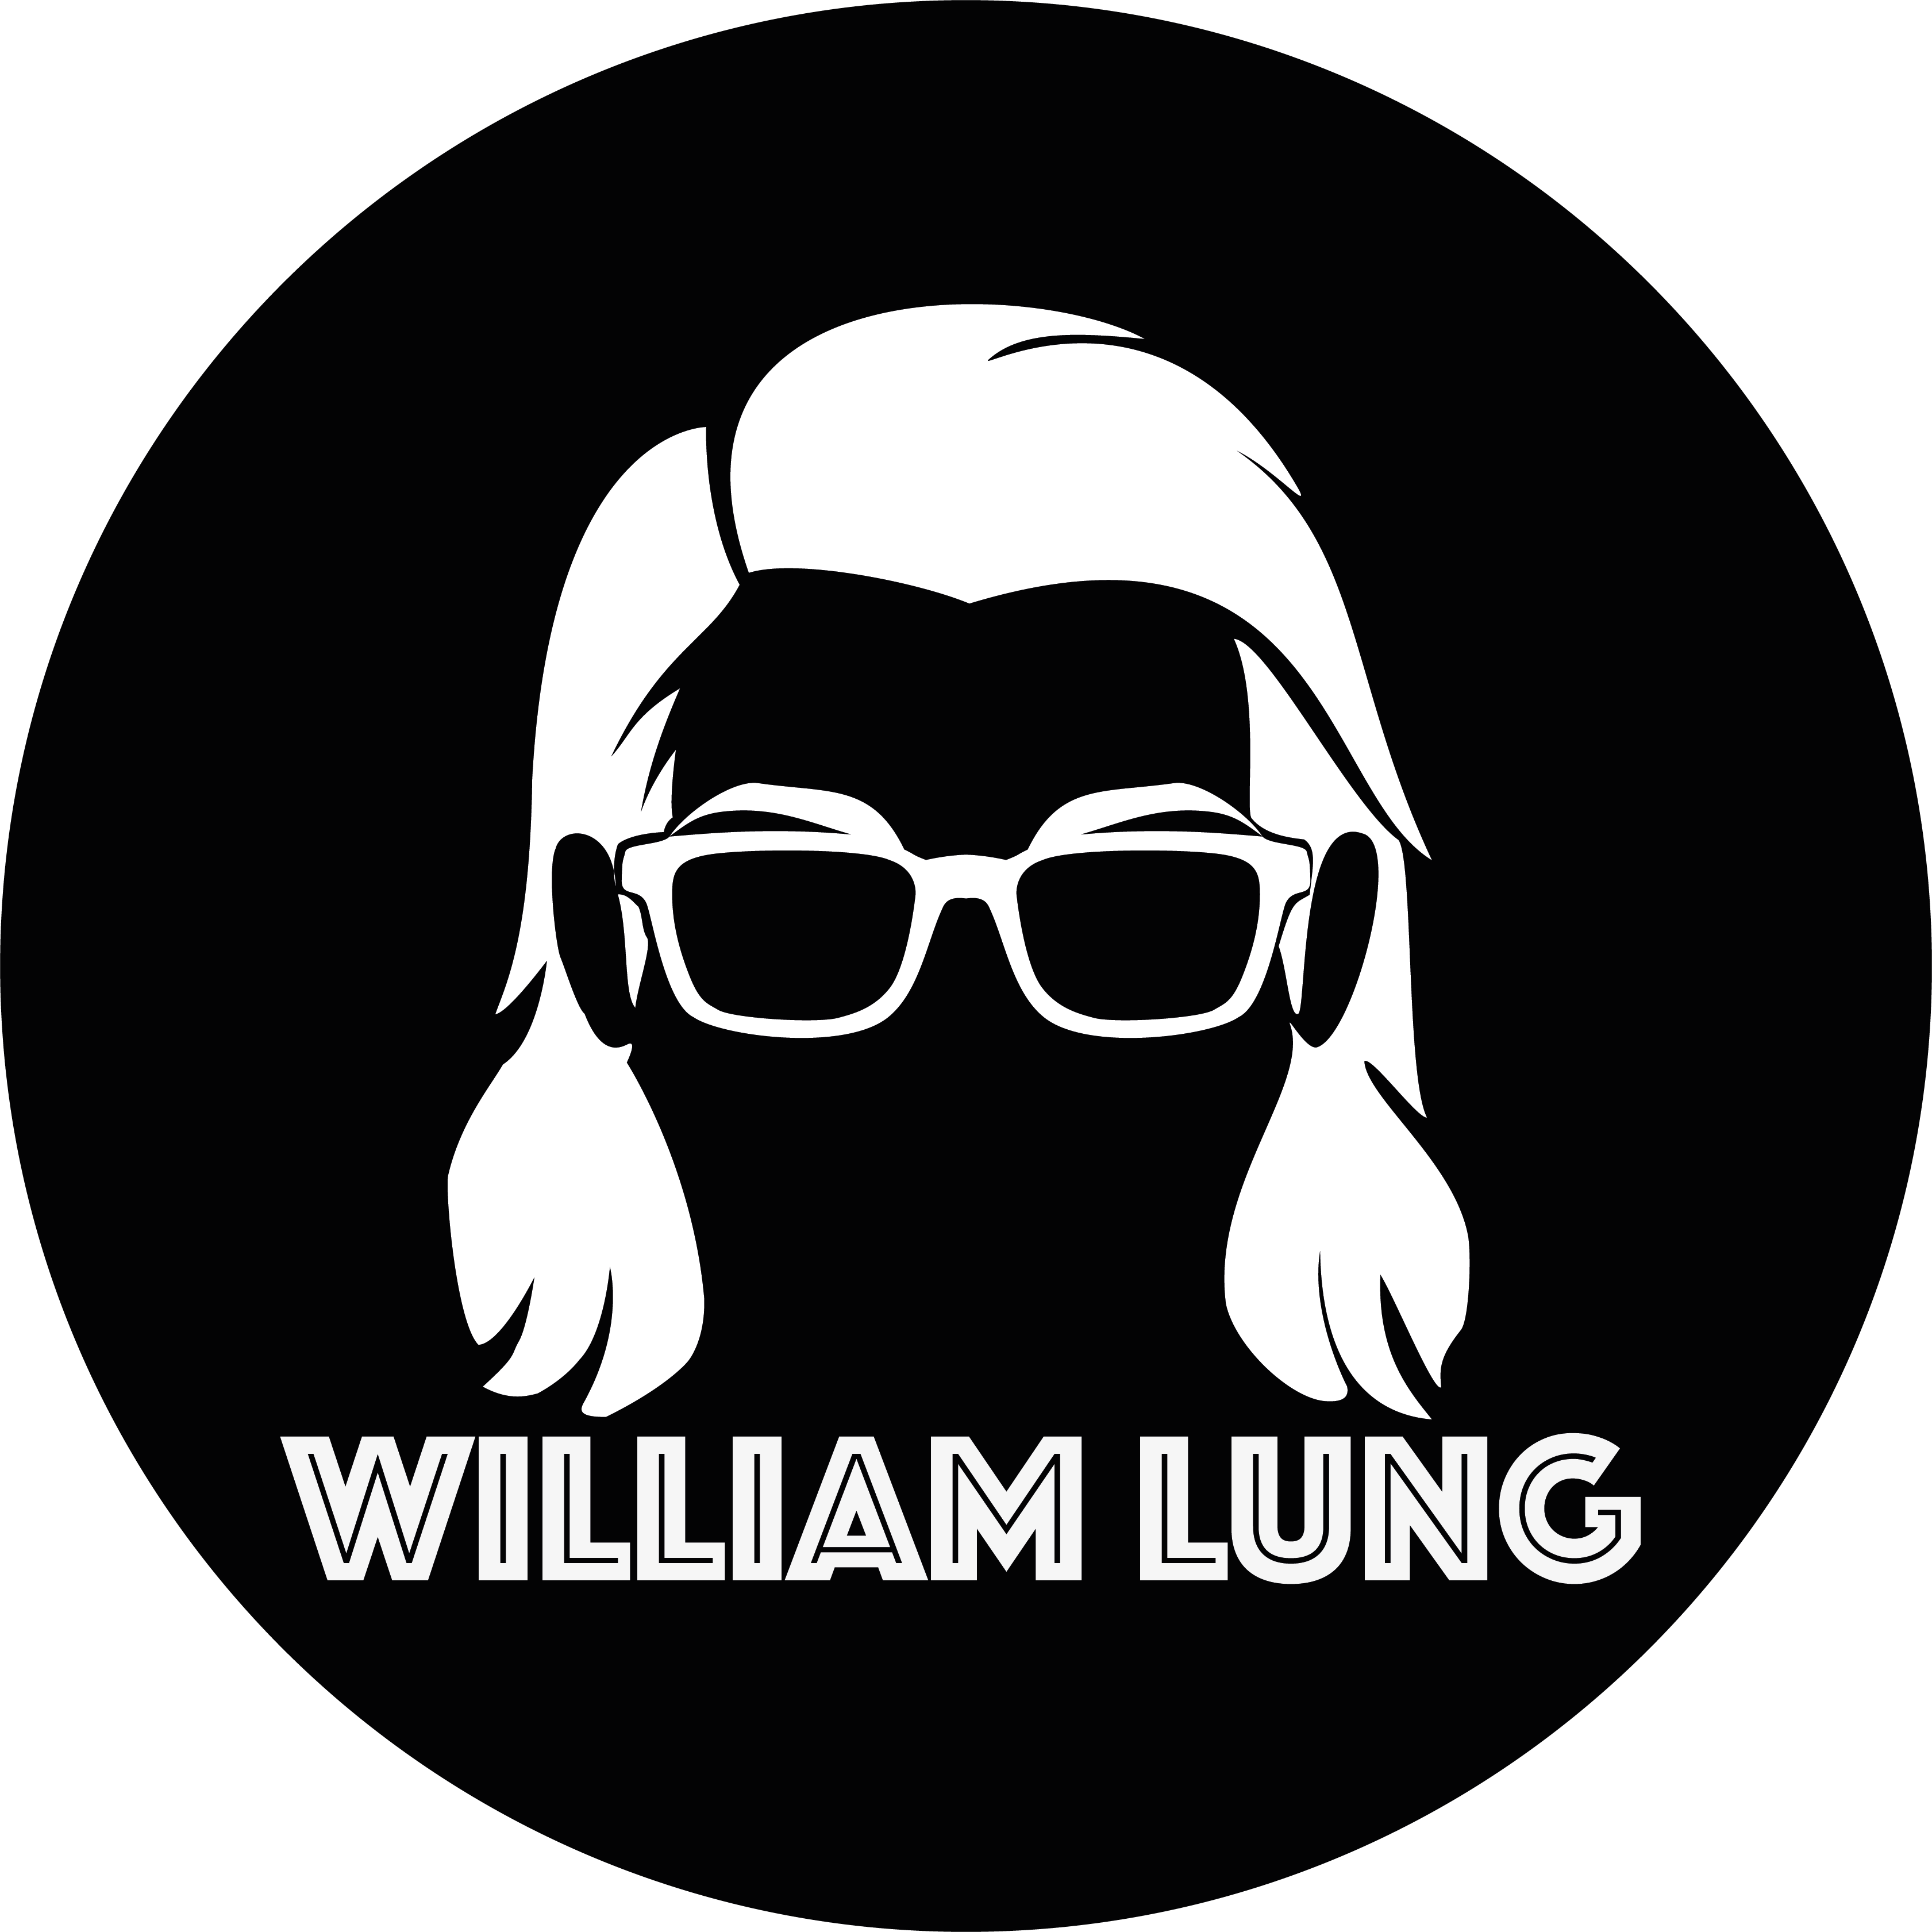 William Lung